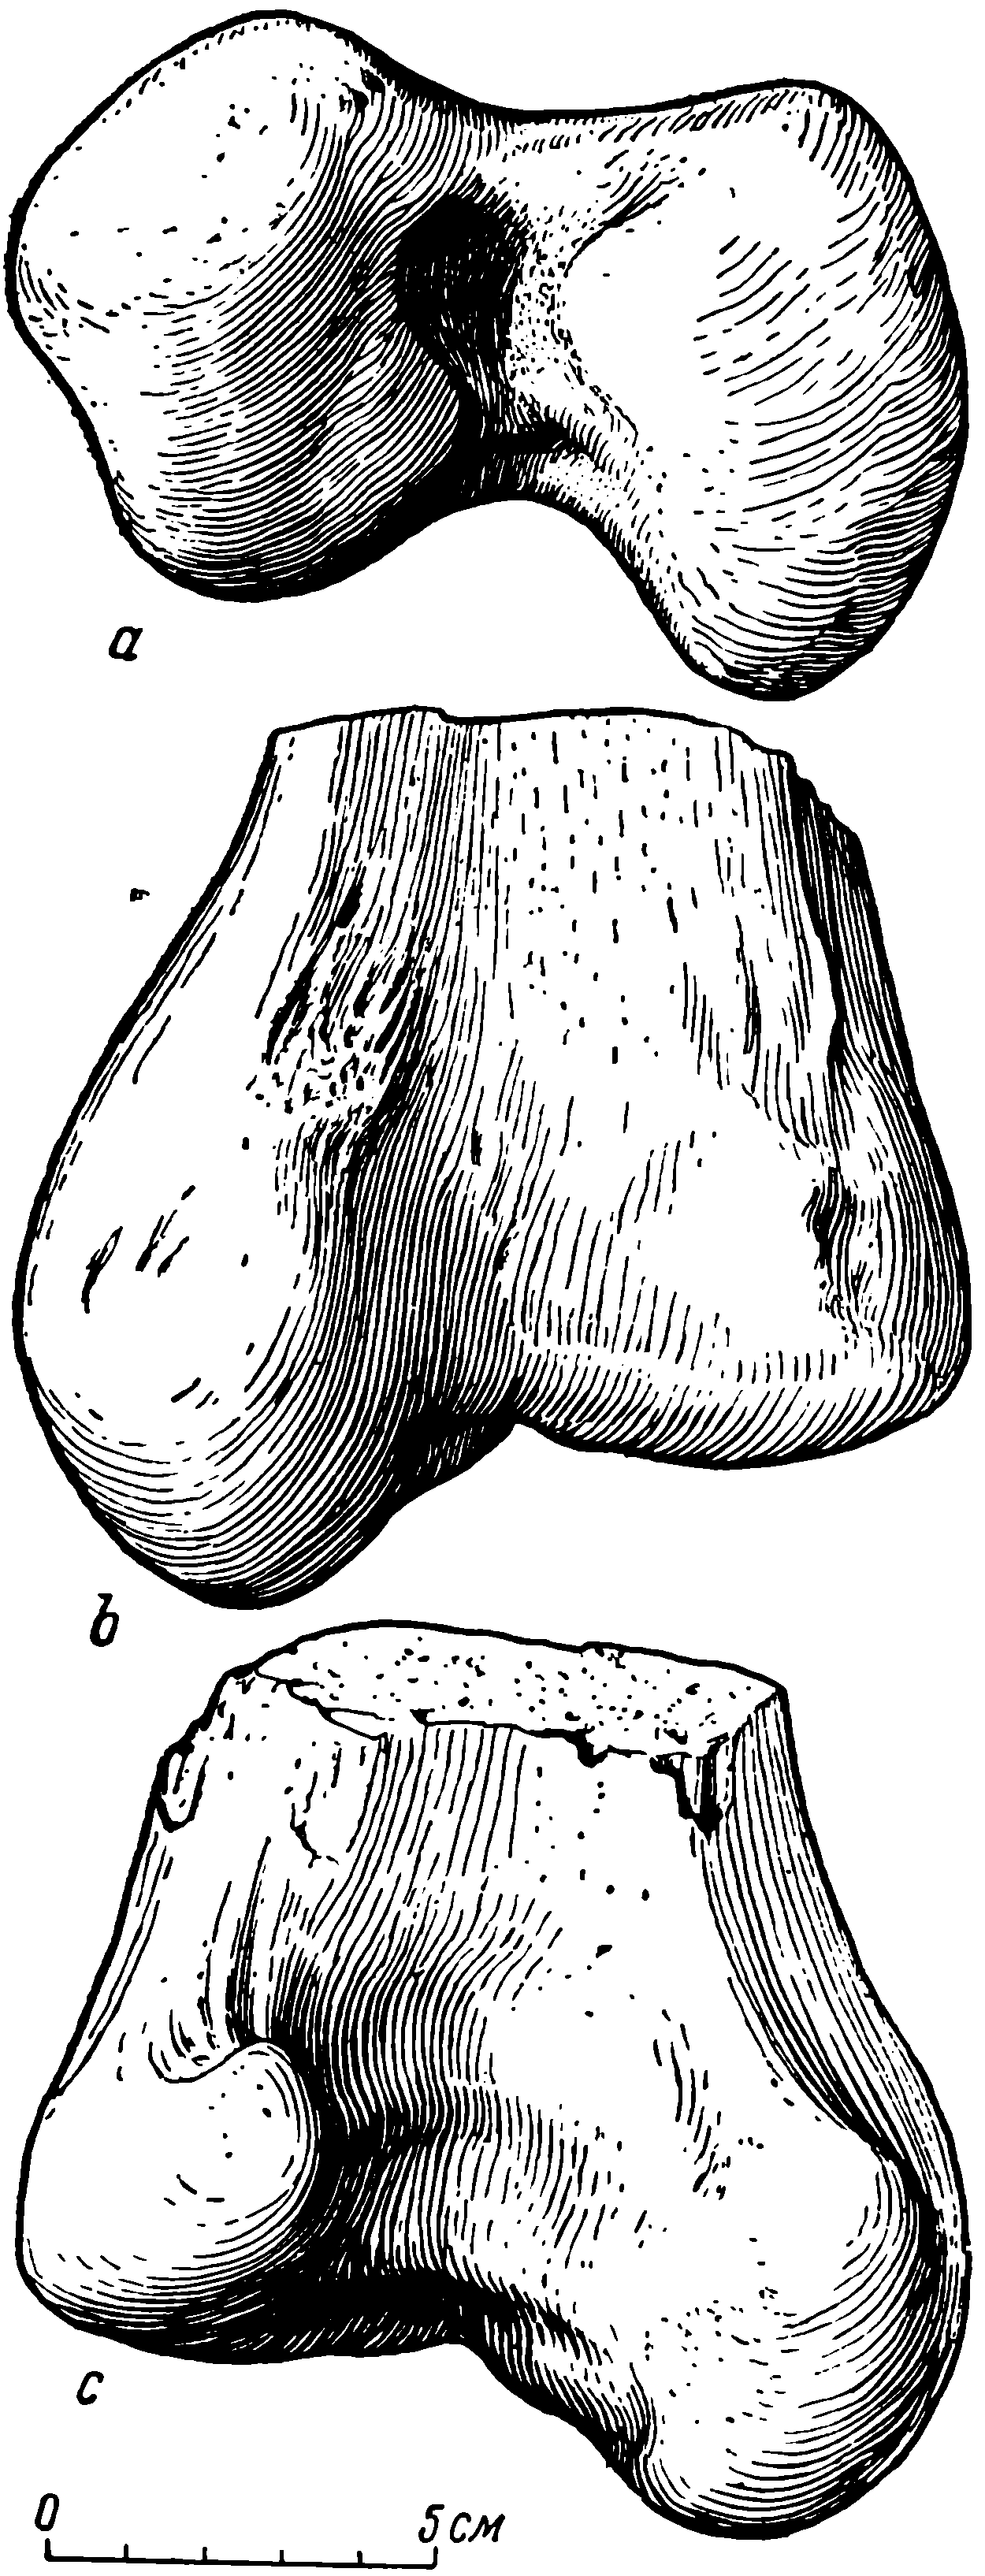 Рис. 29. Deuterosaurus gigas sp. nov. Правая бедренная кость (femur), дистальная часть, ЛГУ/ЧМП № 1/1326. a — снизу; b — переднедорсальная поверхность; c — задневентральная поверхность